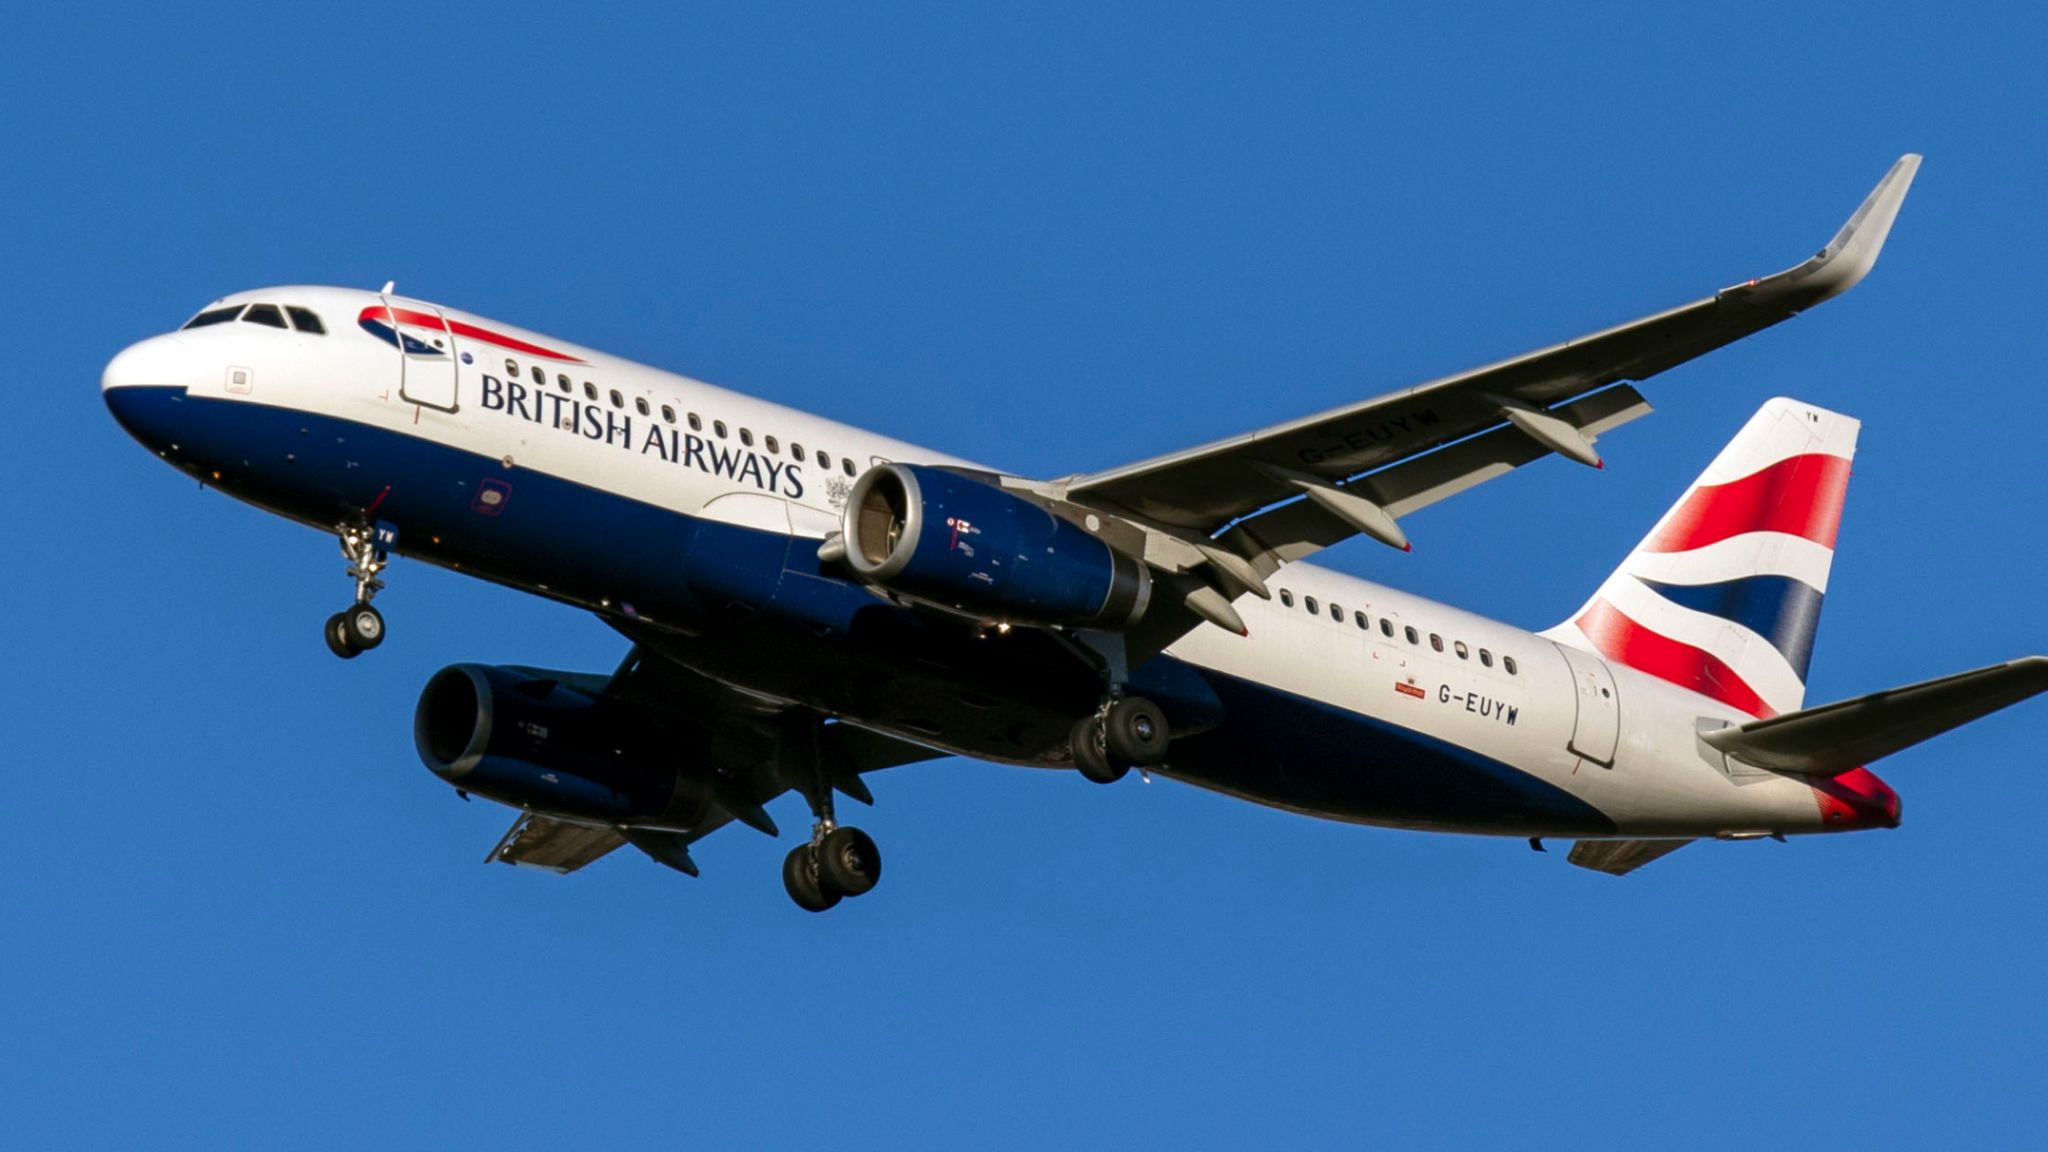 British Airways Flight Bound For Germany Lands in Scotland by Mistake ...